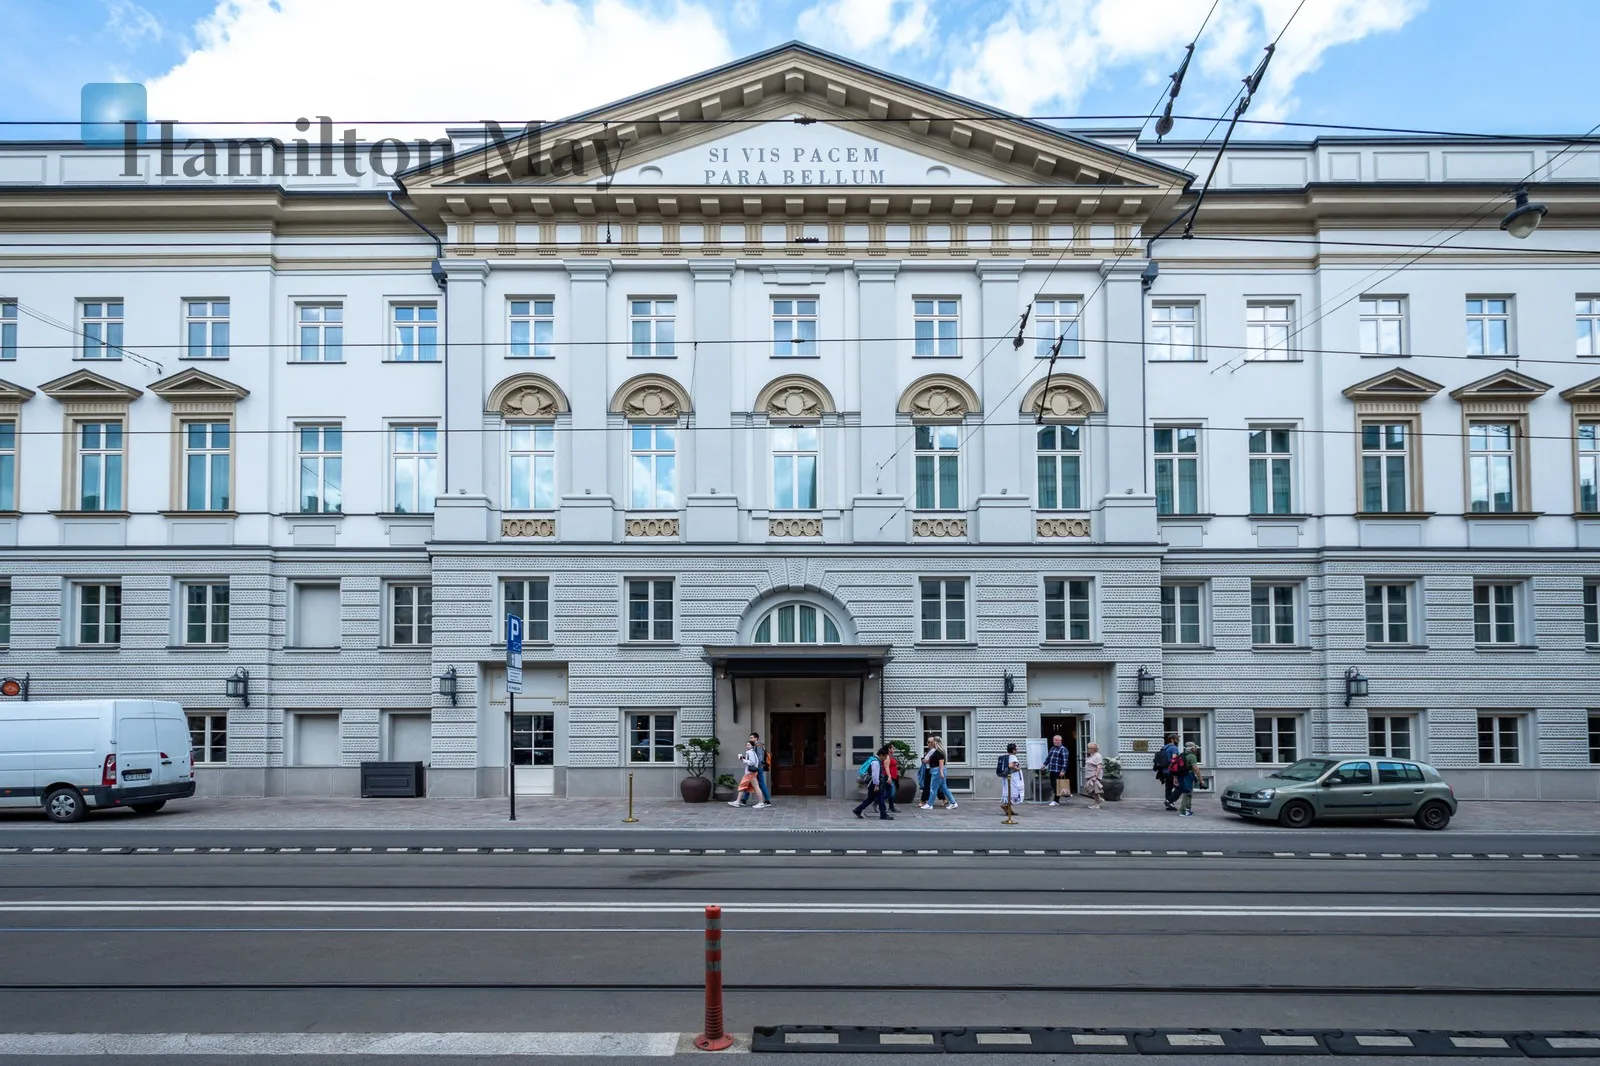 2-pokojowy, cichy apartament z balkonem w jednej z najbardziej luksusowych inwestycji Krakowa - slider